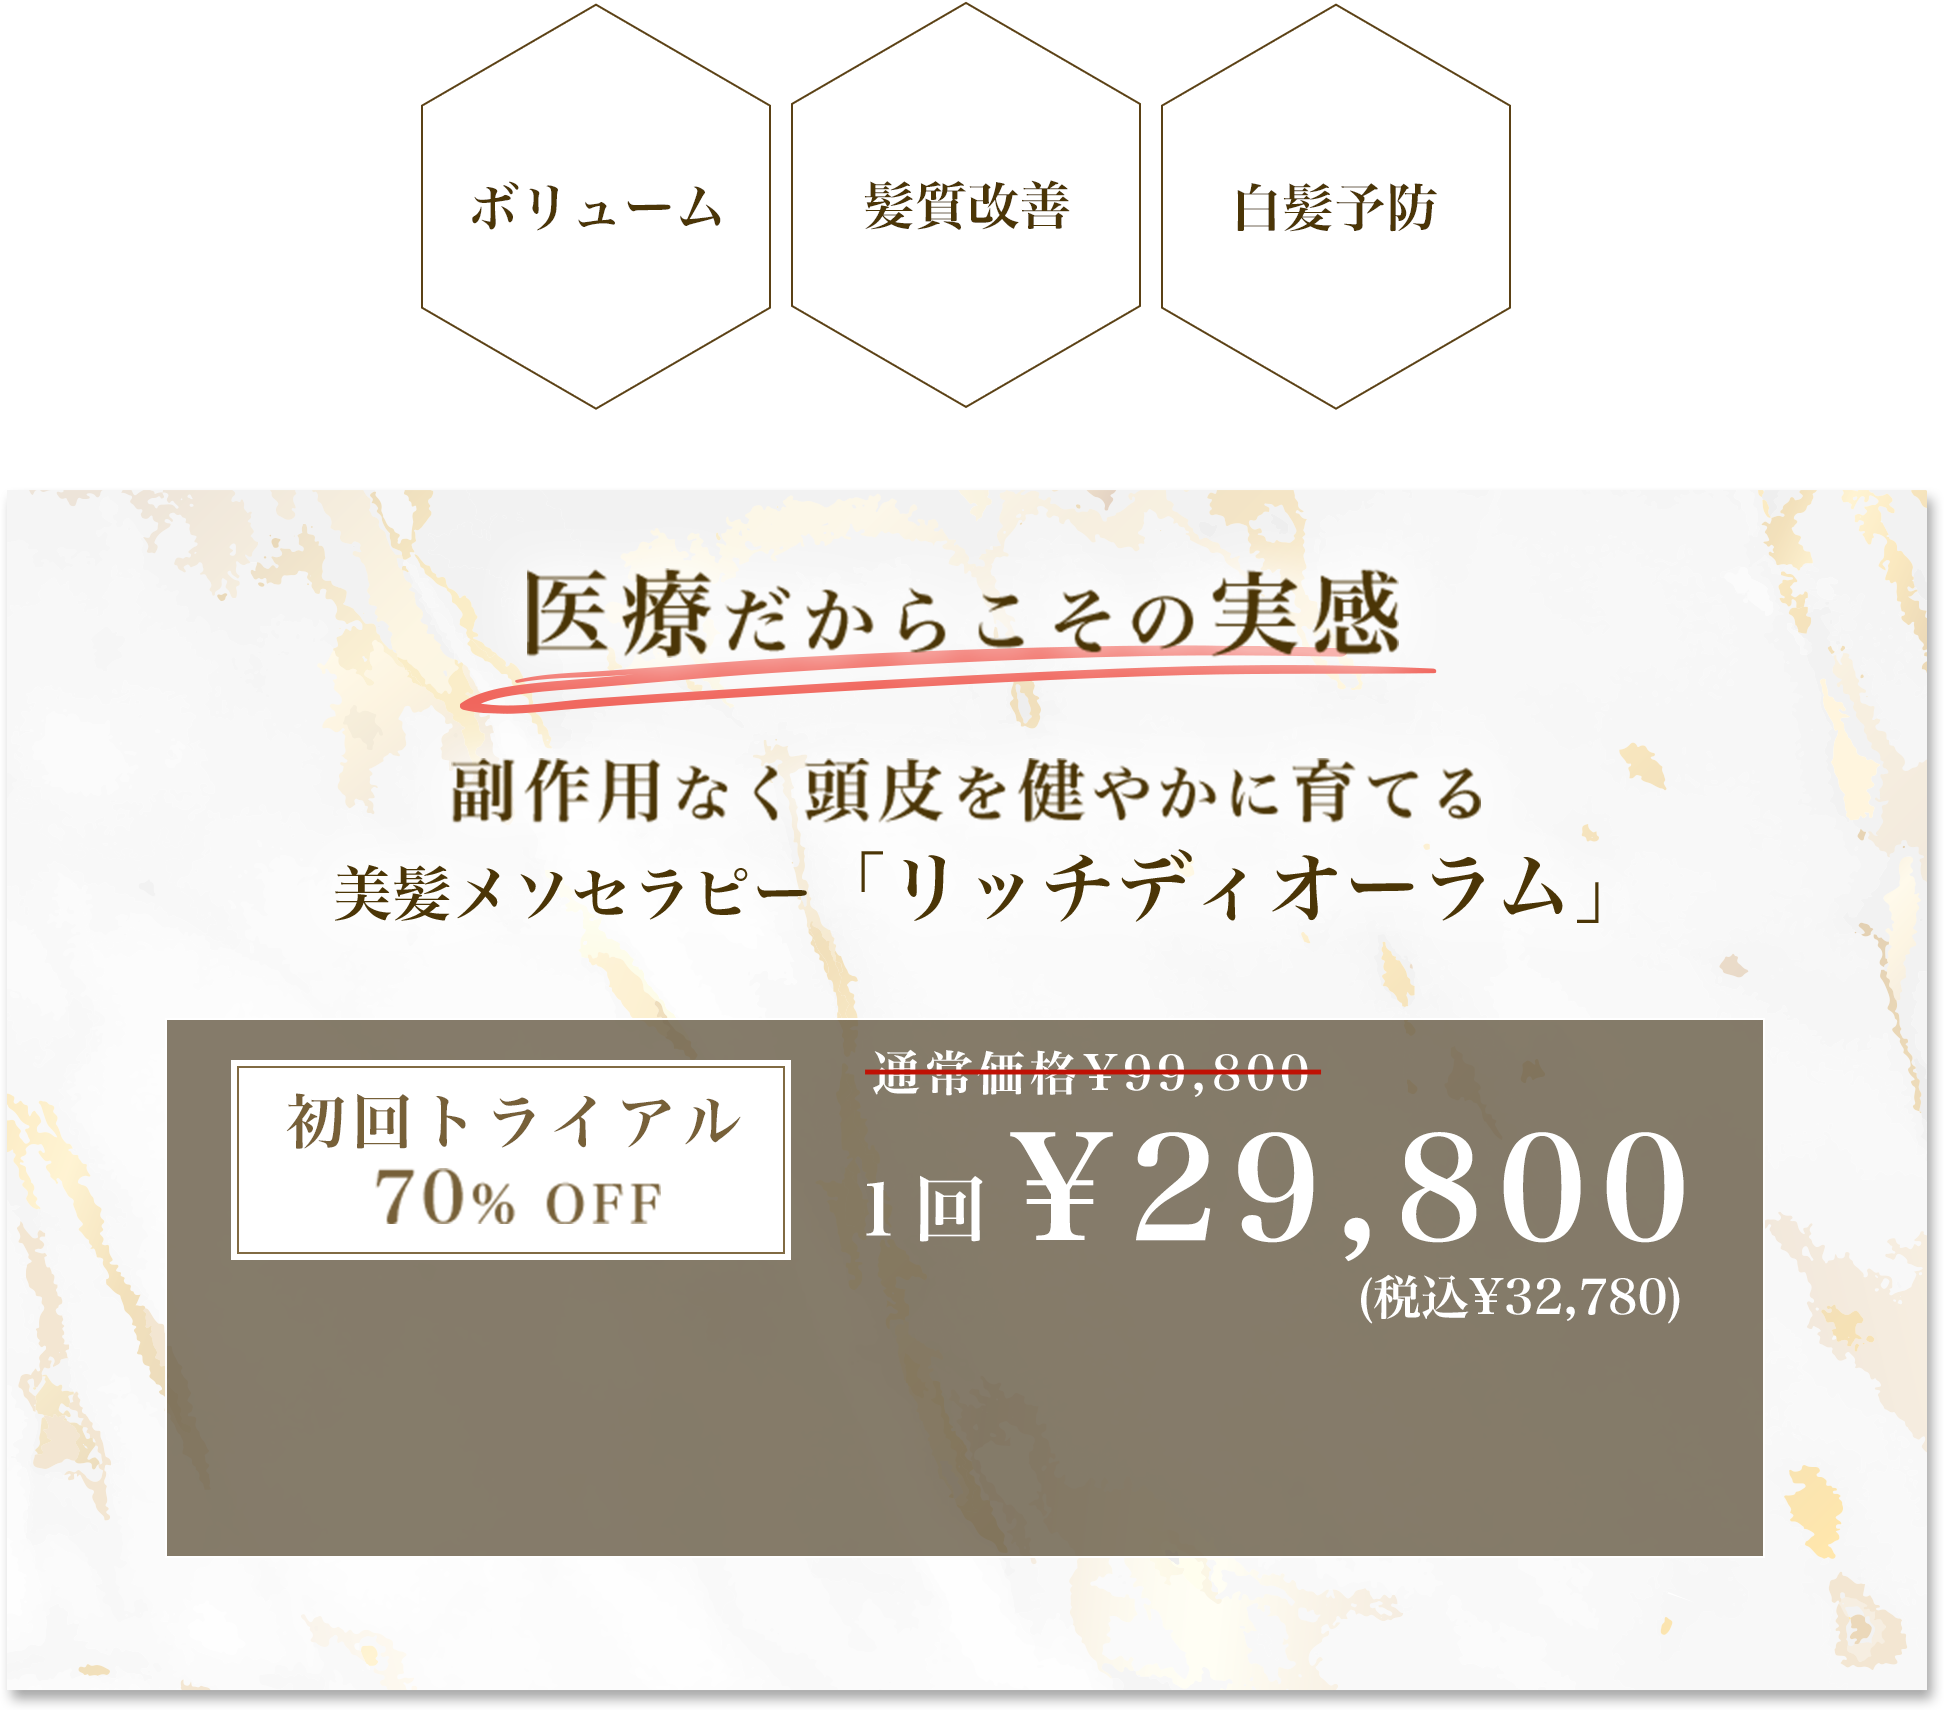 初回トライアル1回¥29,800